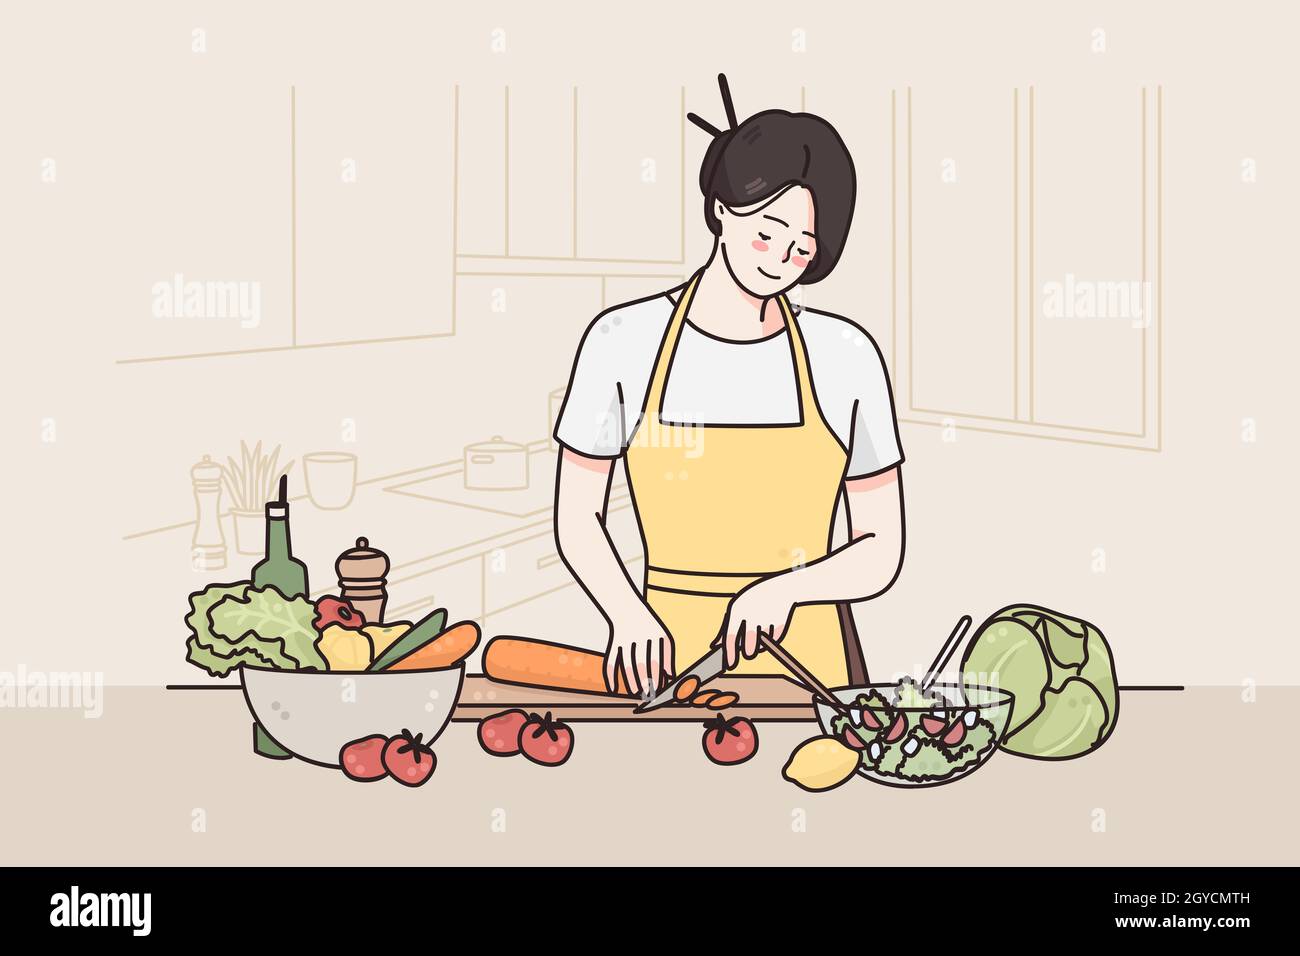 Dieta sana e stile di vita concetto. Giovane personaggio fumetto femminile sorridente in grembiule in piedi in cucina e tagliare le verdure rendendo sana SA fresca Foto Stock